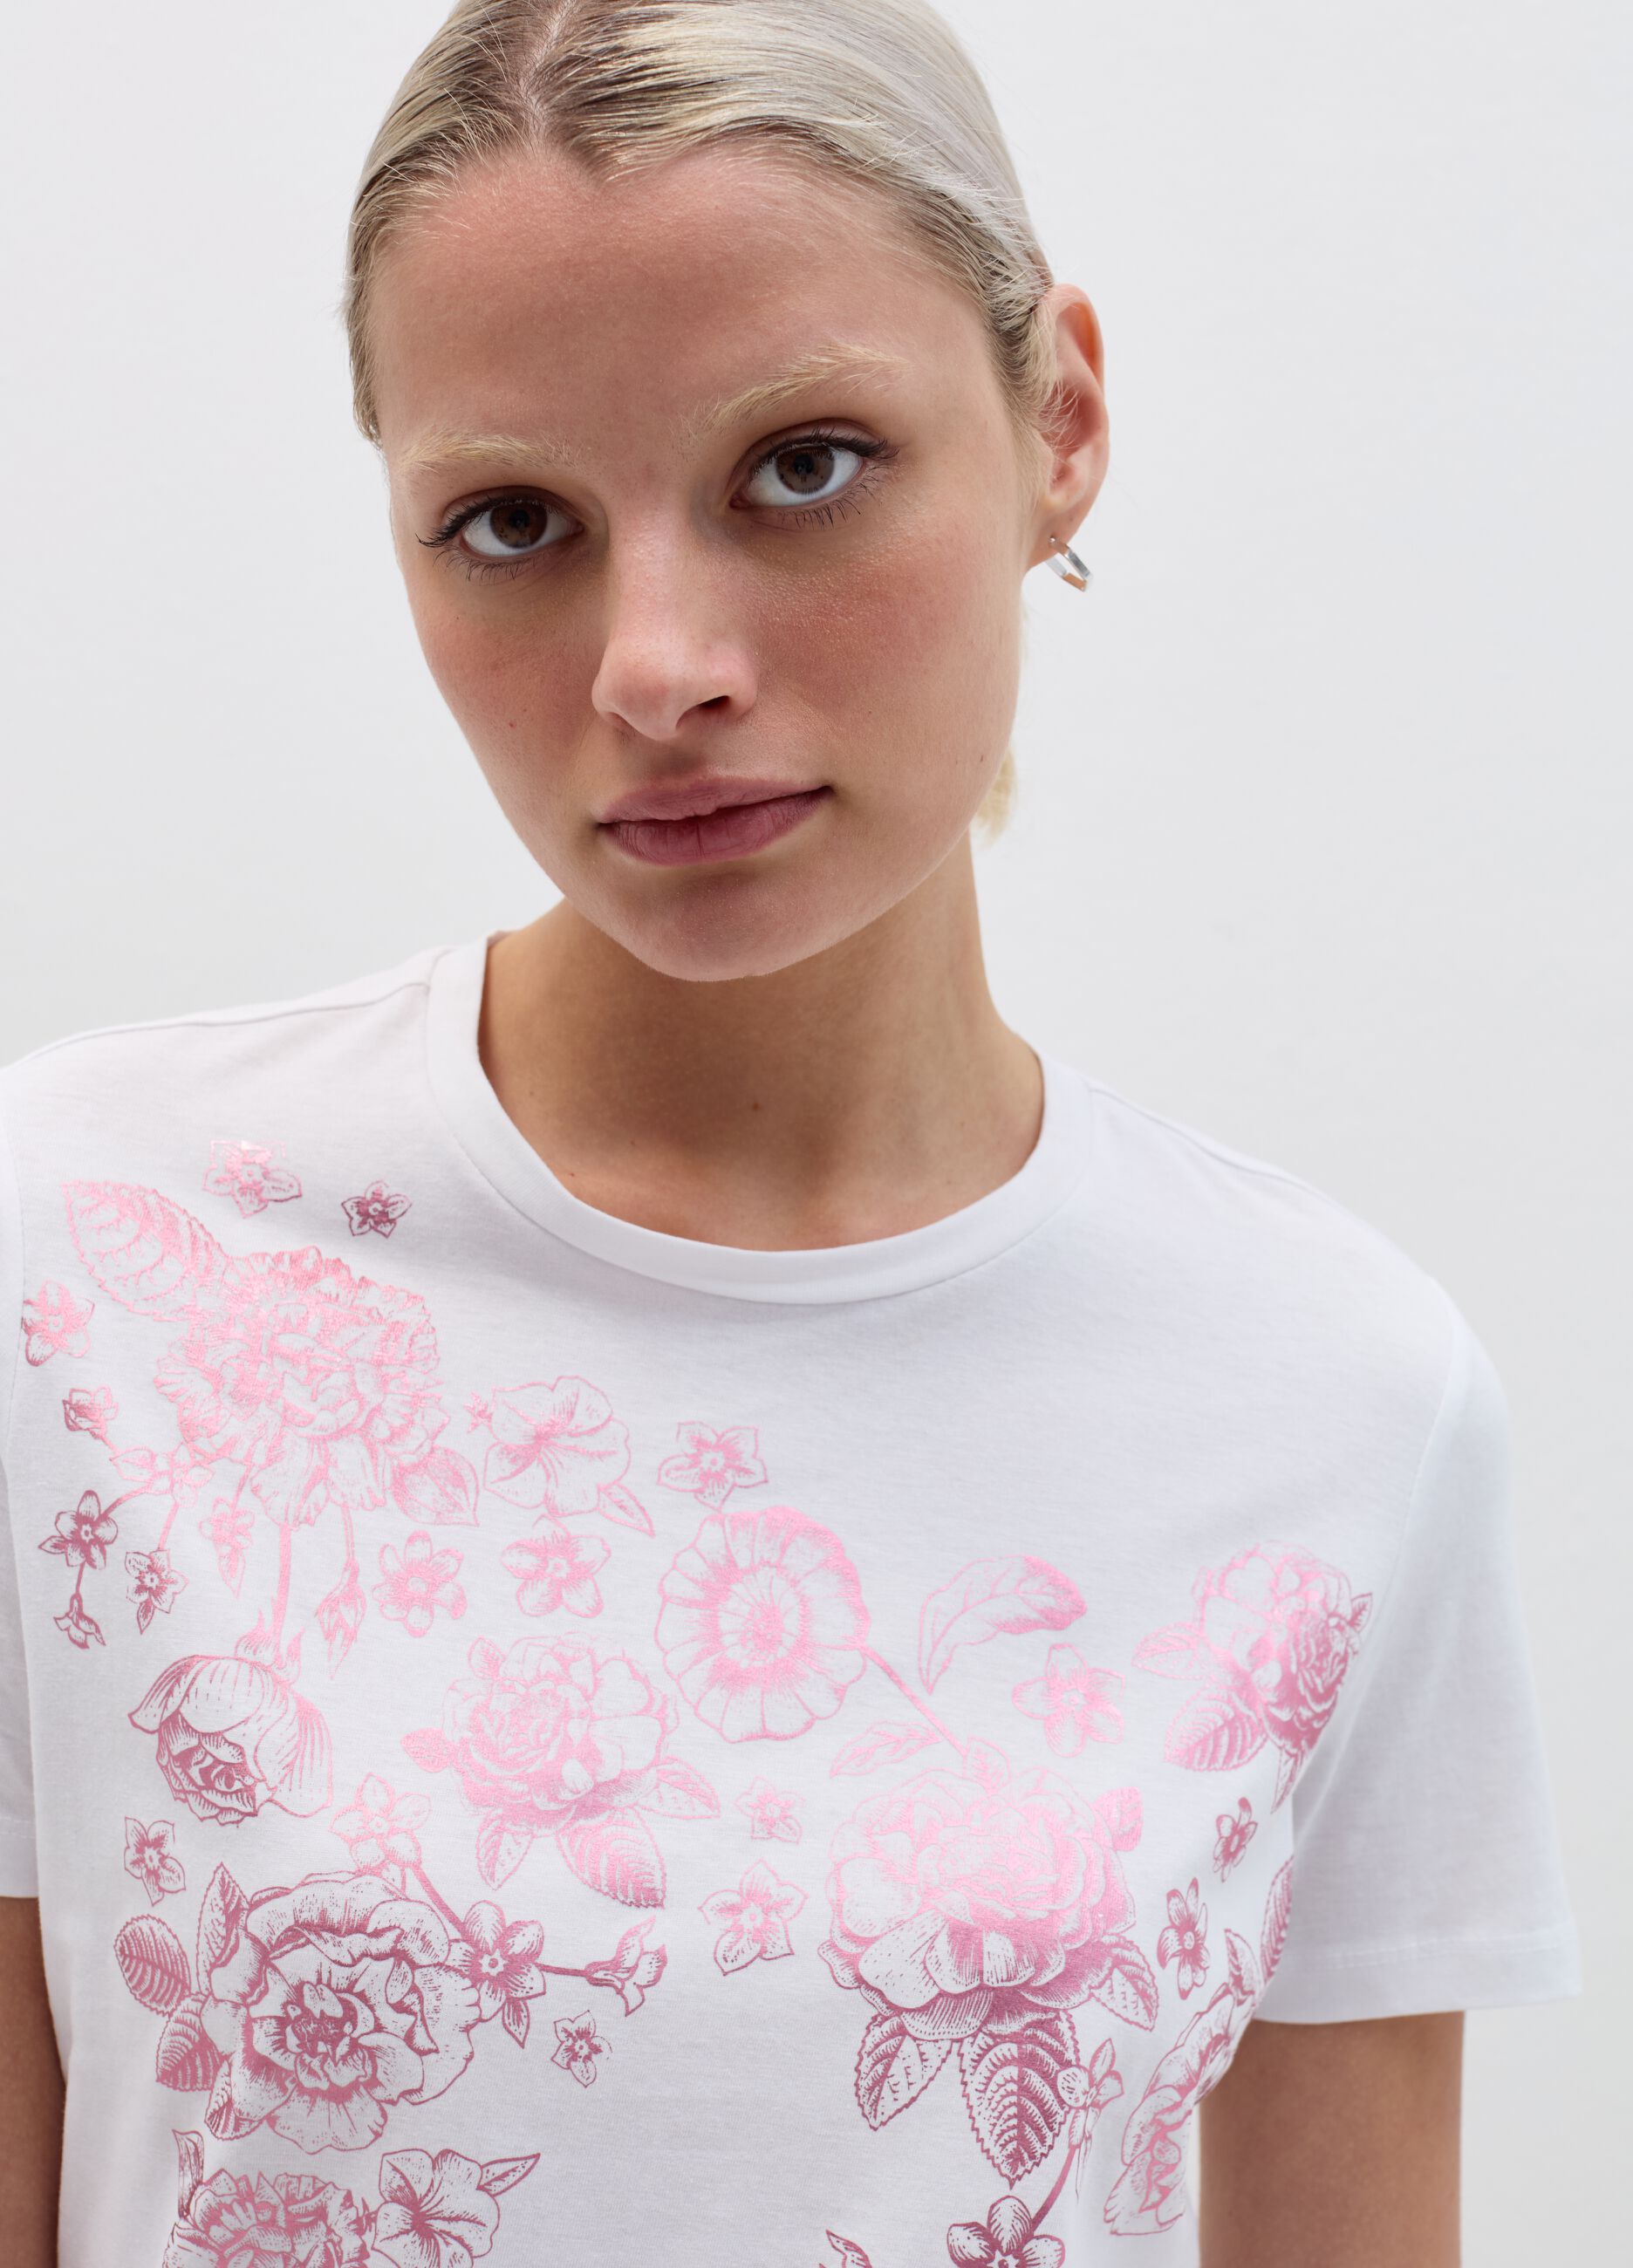 T-shirt con stampa fiori in foil